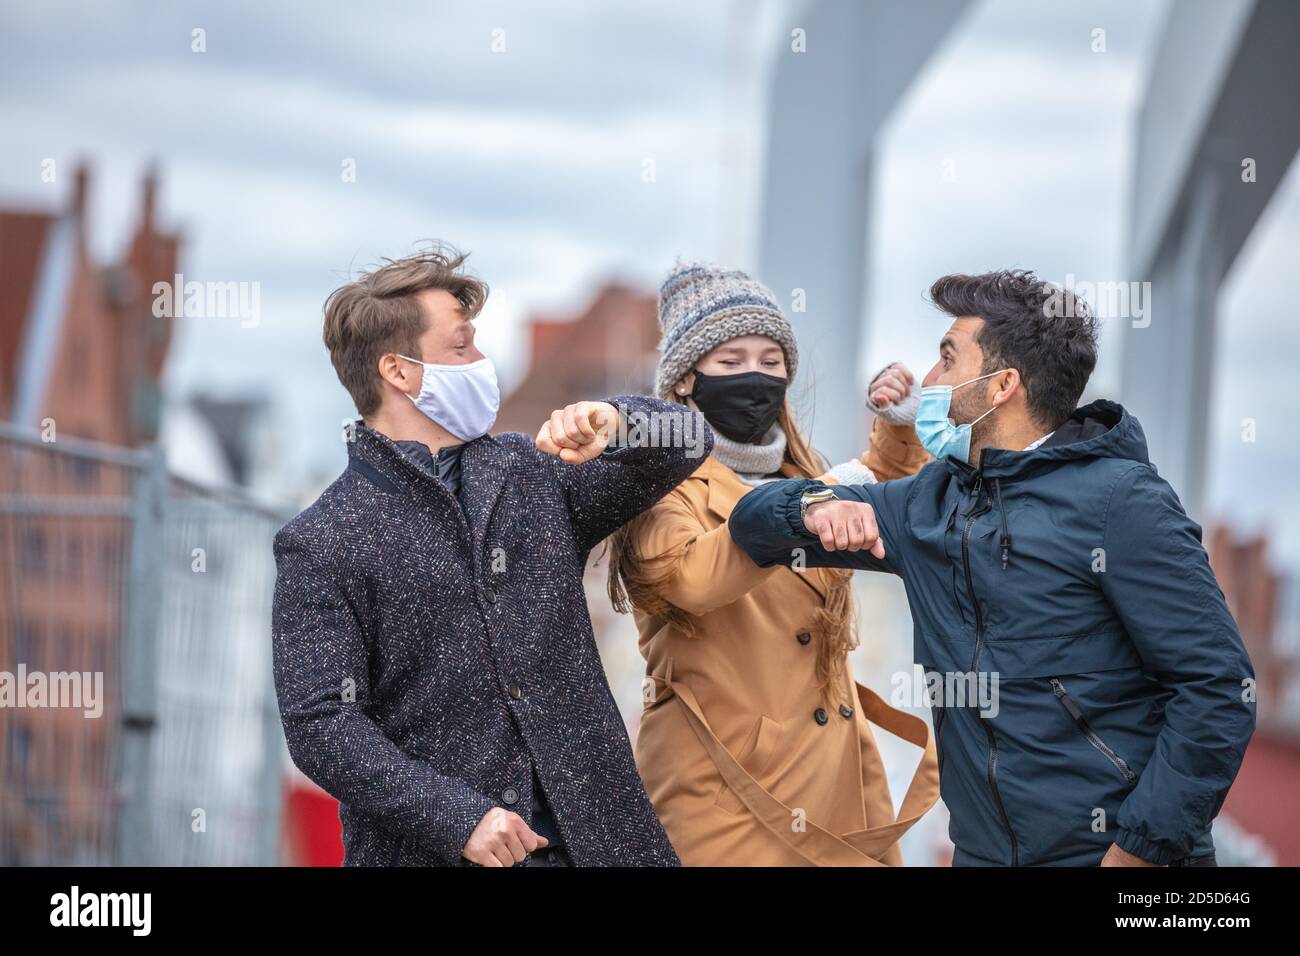 Zwei Männer und eine Frau begrüssen sich mit dem Ellenbogen. Corona-Zeit mit alltäglichen Masken in der kalten Jahreszeit in der Stadt. Banque D'Images